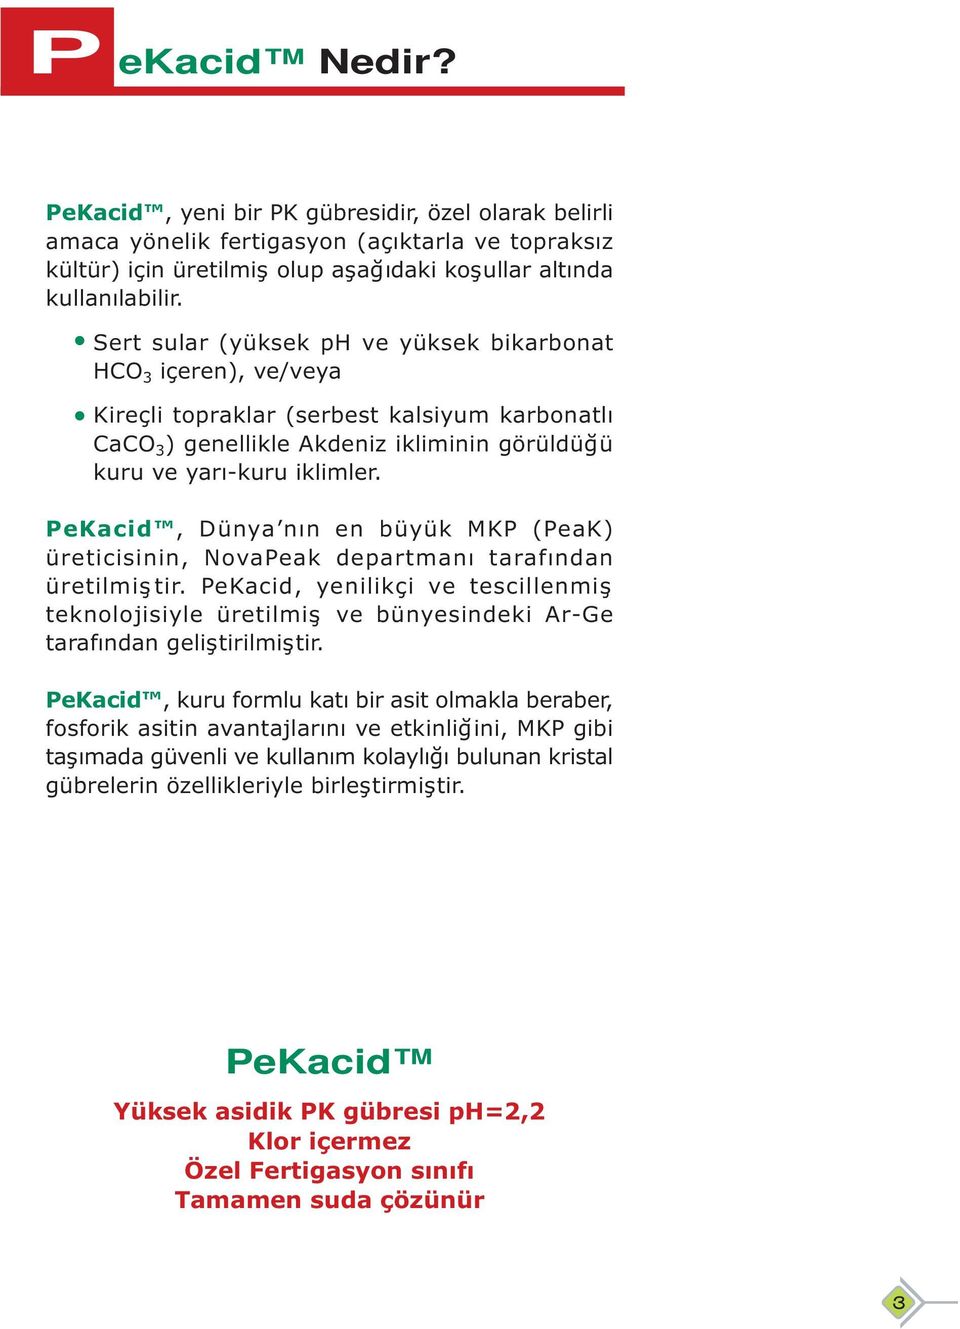 PeKacid, Dünya nın en büyük MKP (PeaK) üreticisinin, NovaPeak departmanı tarafından üretilmiştir.